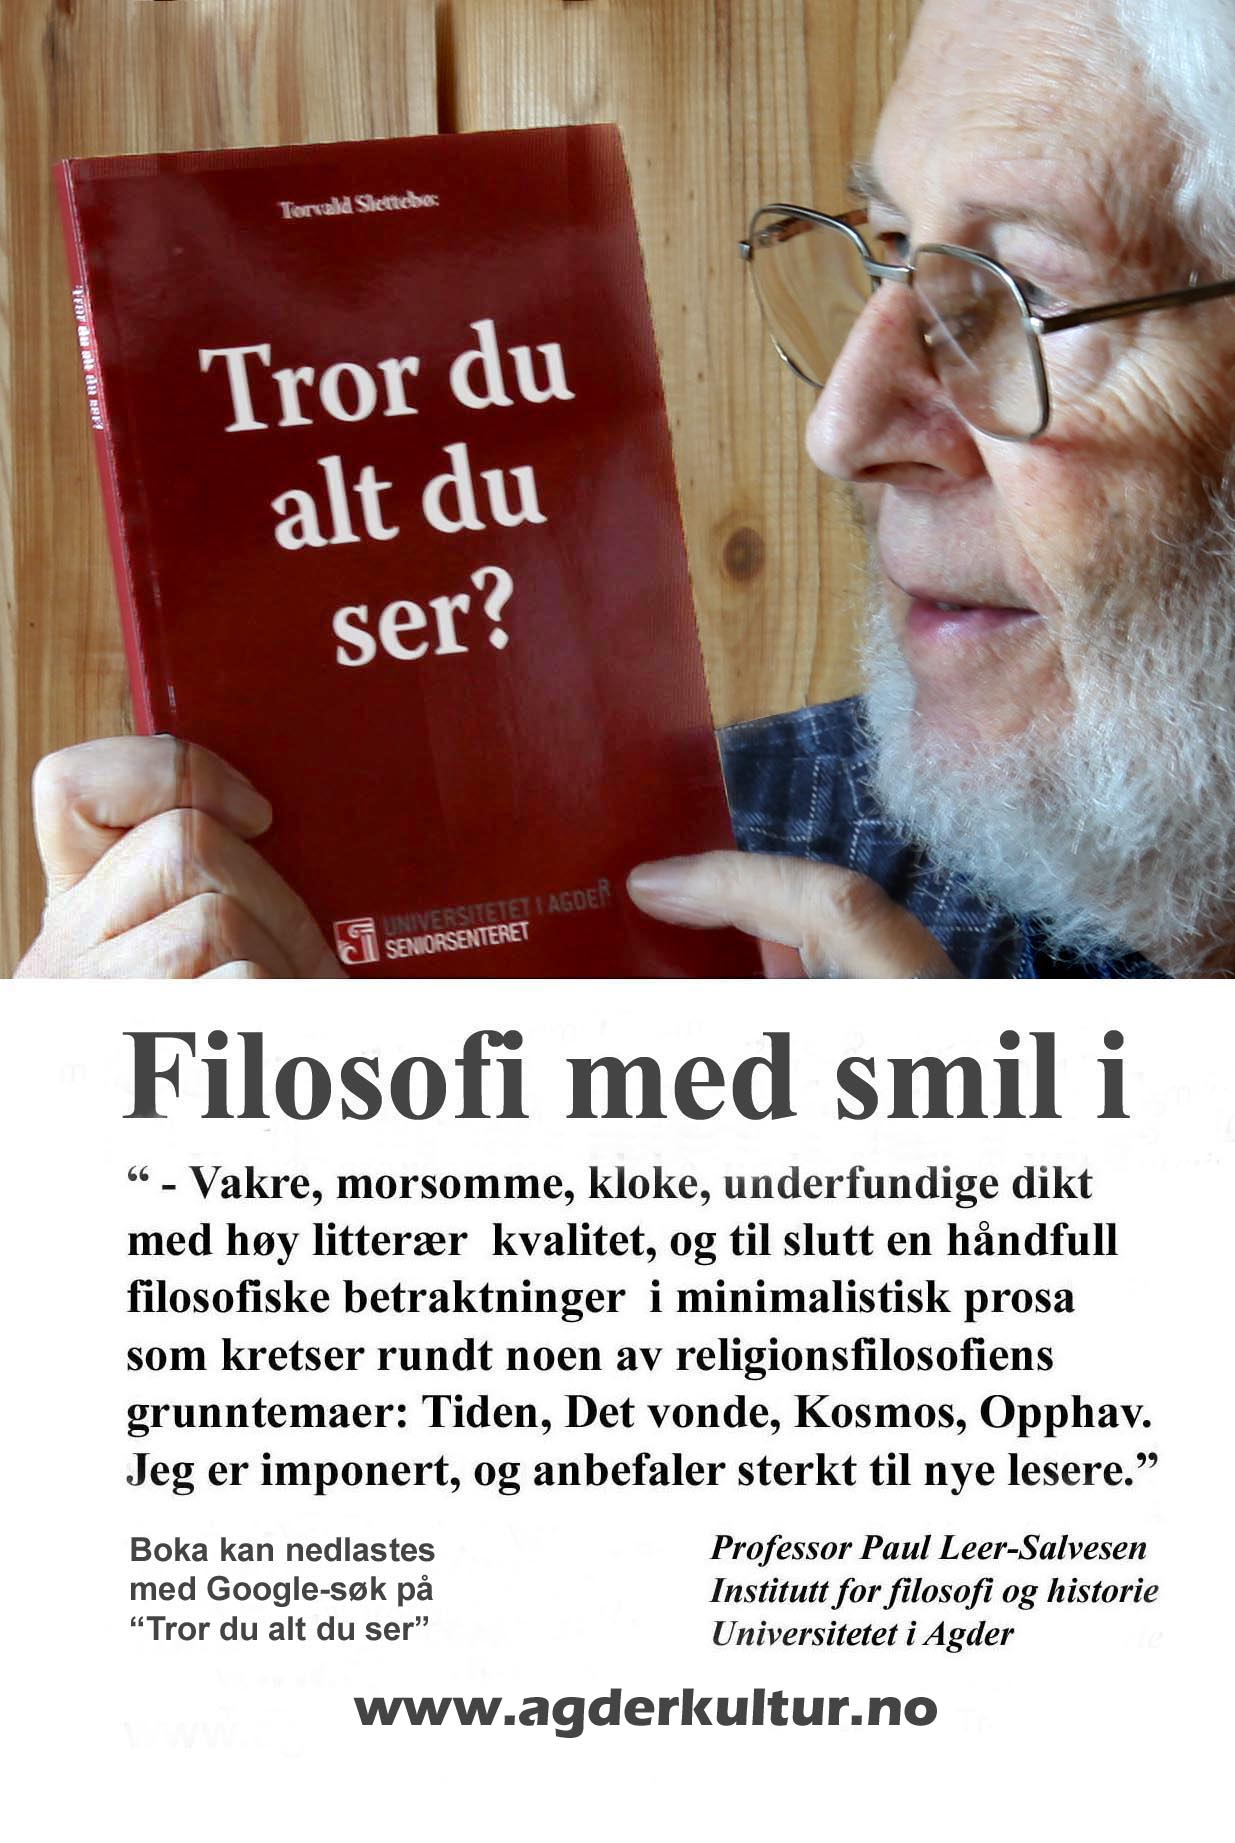 Bilde av Torvald Slettebø med boka Tror du alt du ser? i en bokanmeldelse